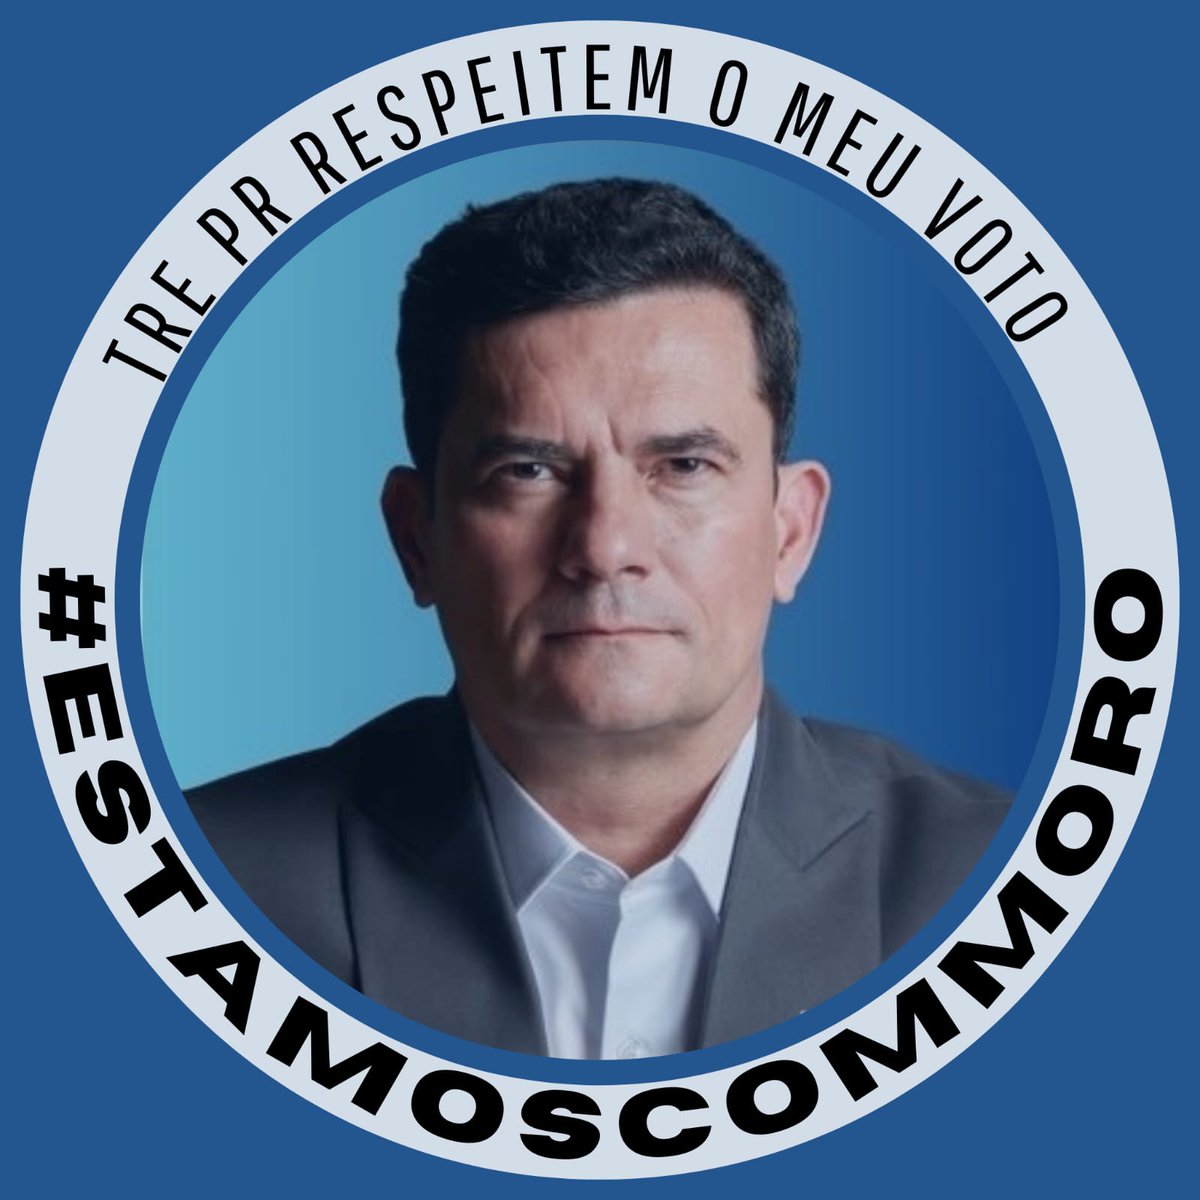 #FreeSpeechBrasil
#EstamosComMoro